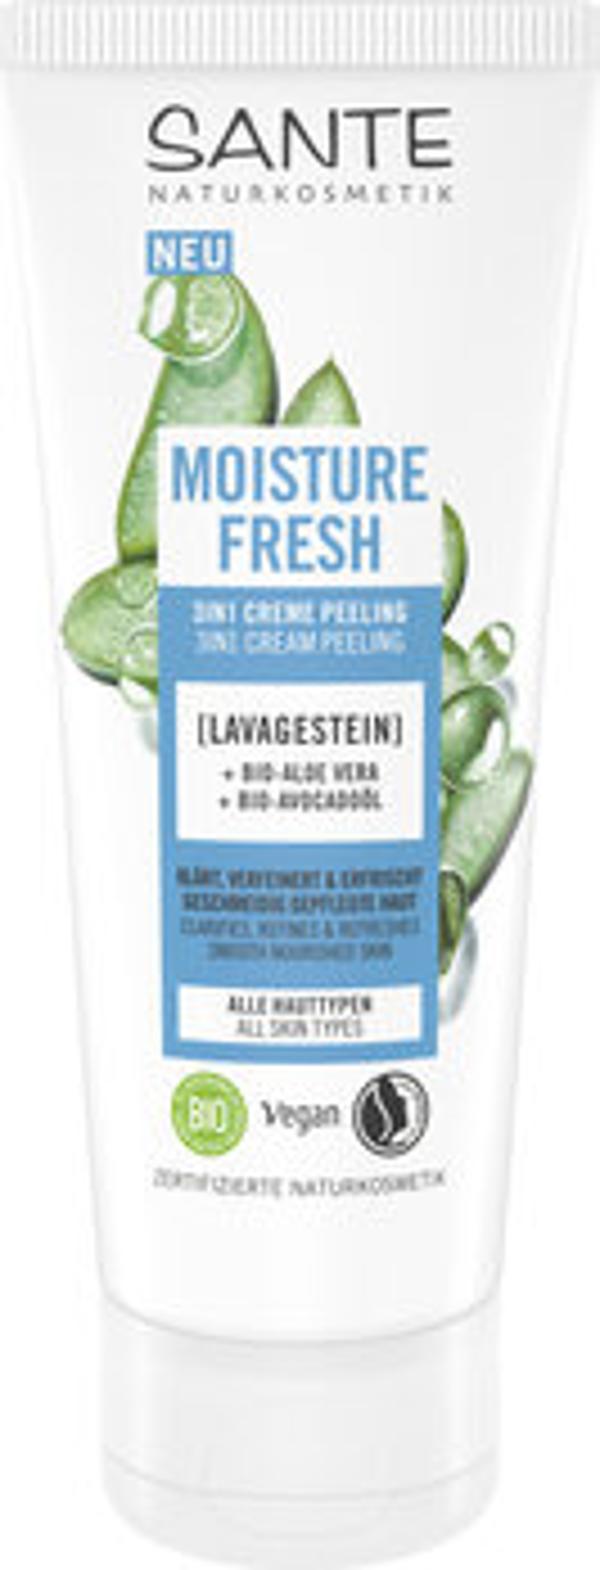 Produktfoto zu Moisture Fresh 3in1 Creme Peeling Lavagestein 100ml